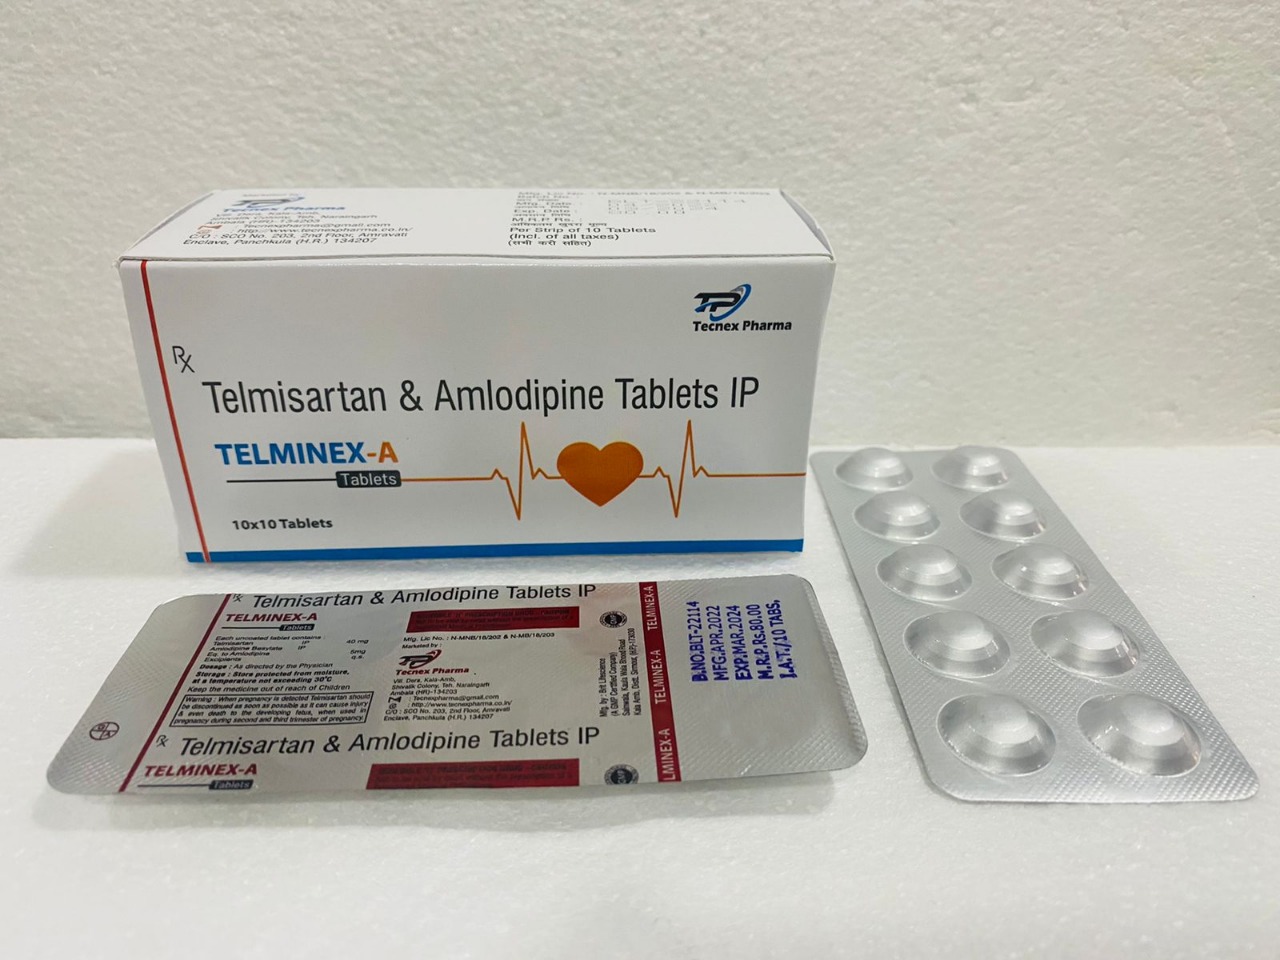 TELMINEX-A Tablets